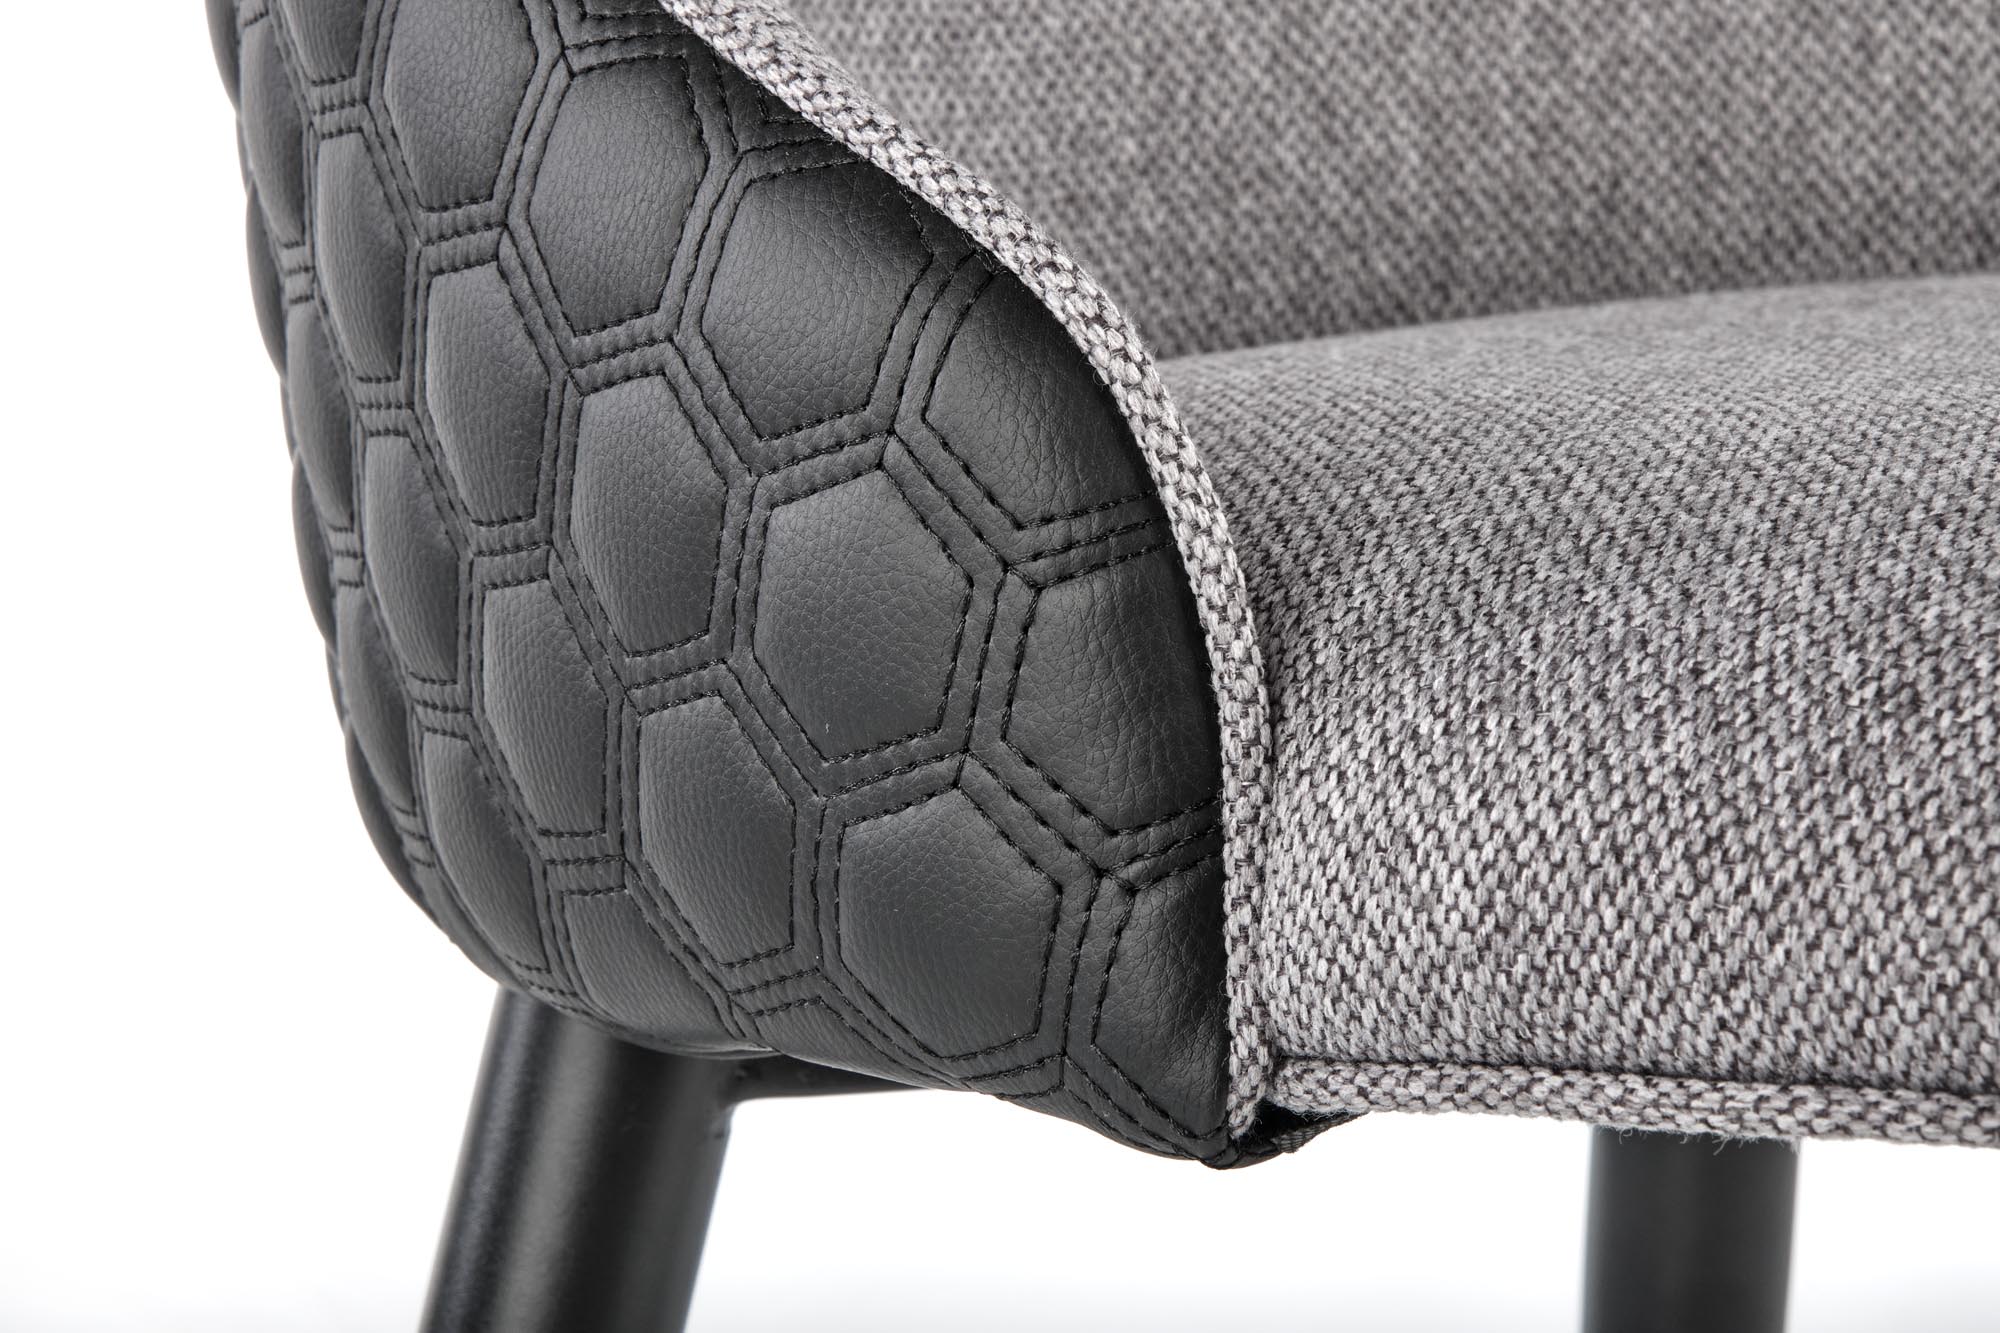 K434 stolica, boja: svijetlo siva / crna